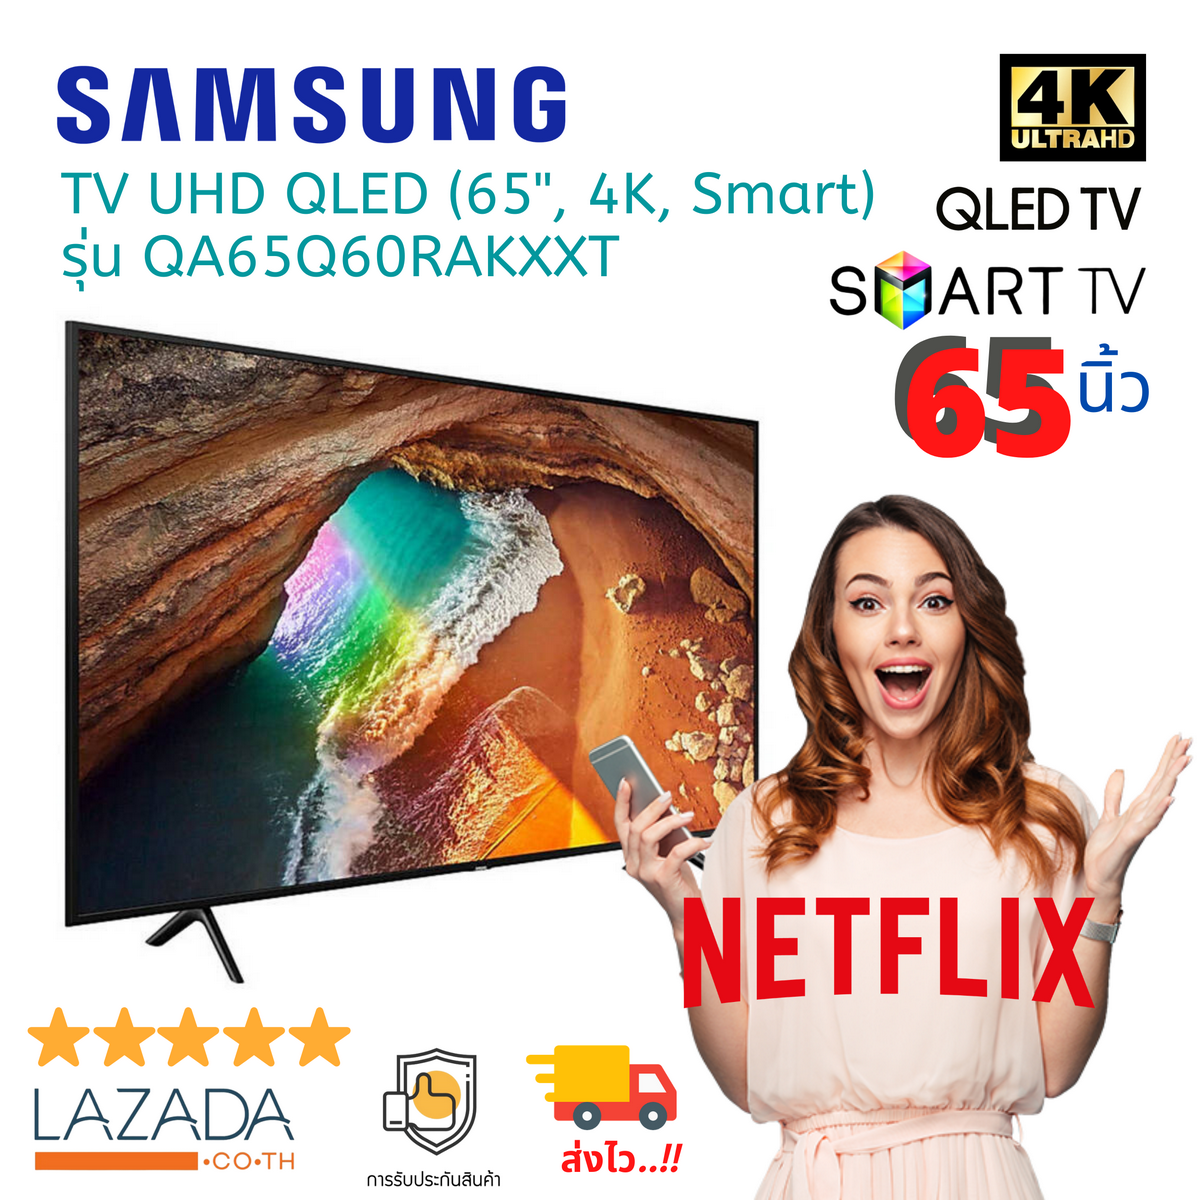 (ของแท้ มีรับประกัน) ทีวีซัมซุง สมาร์ททีวี Smart TV SAMSUNG TV UHD QLED (65